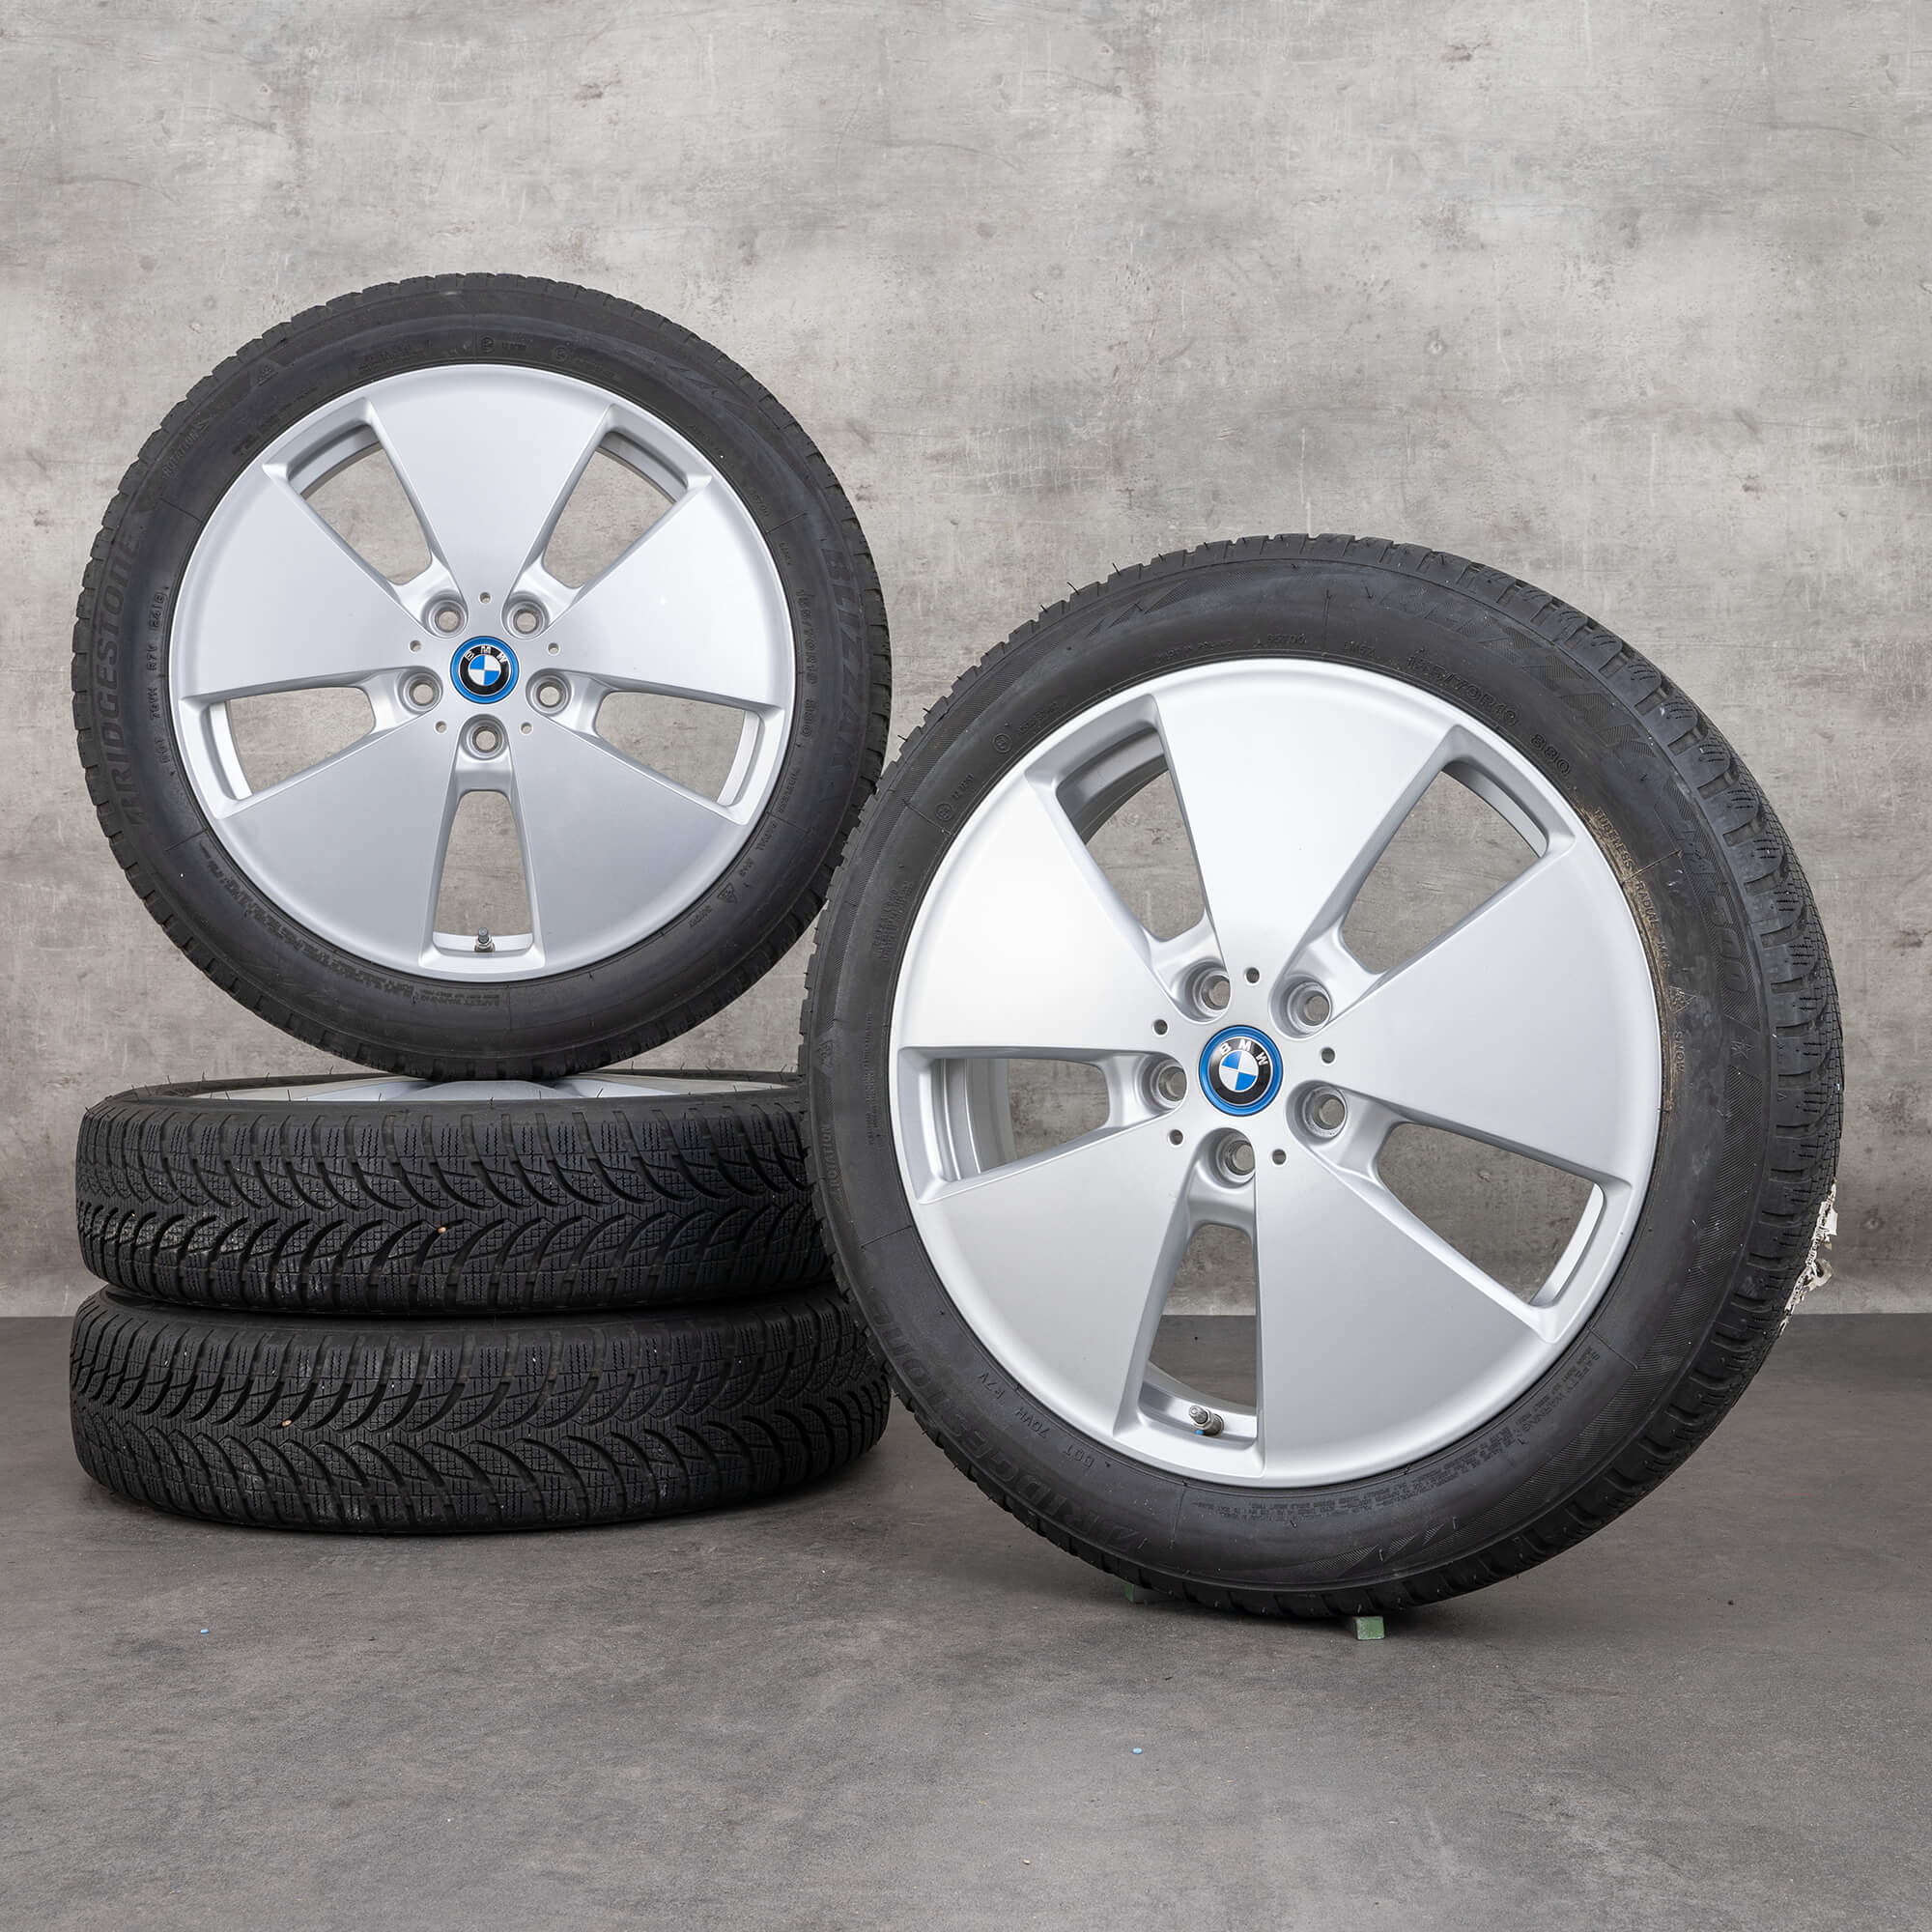 BMW jante 19 inch i3 aluminiu anvelope iarna roti styling 427 6852053